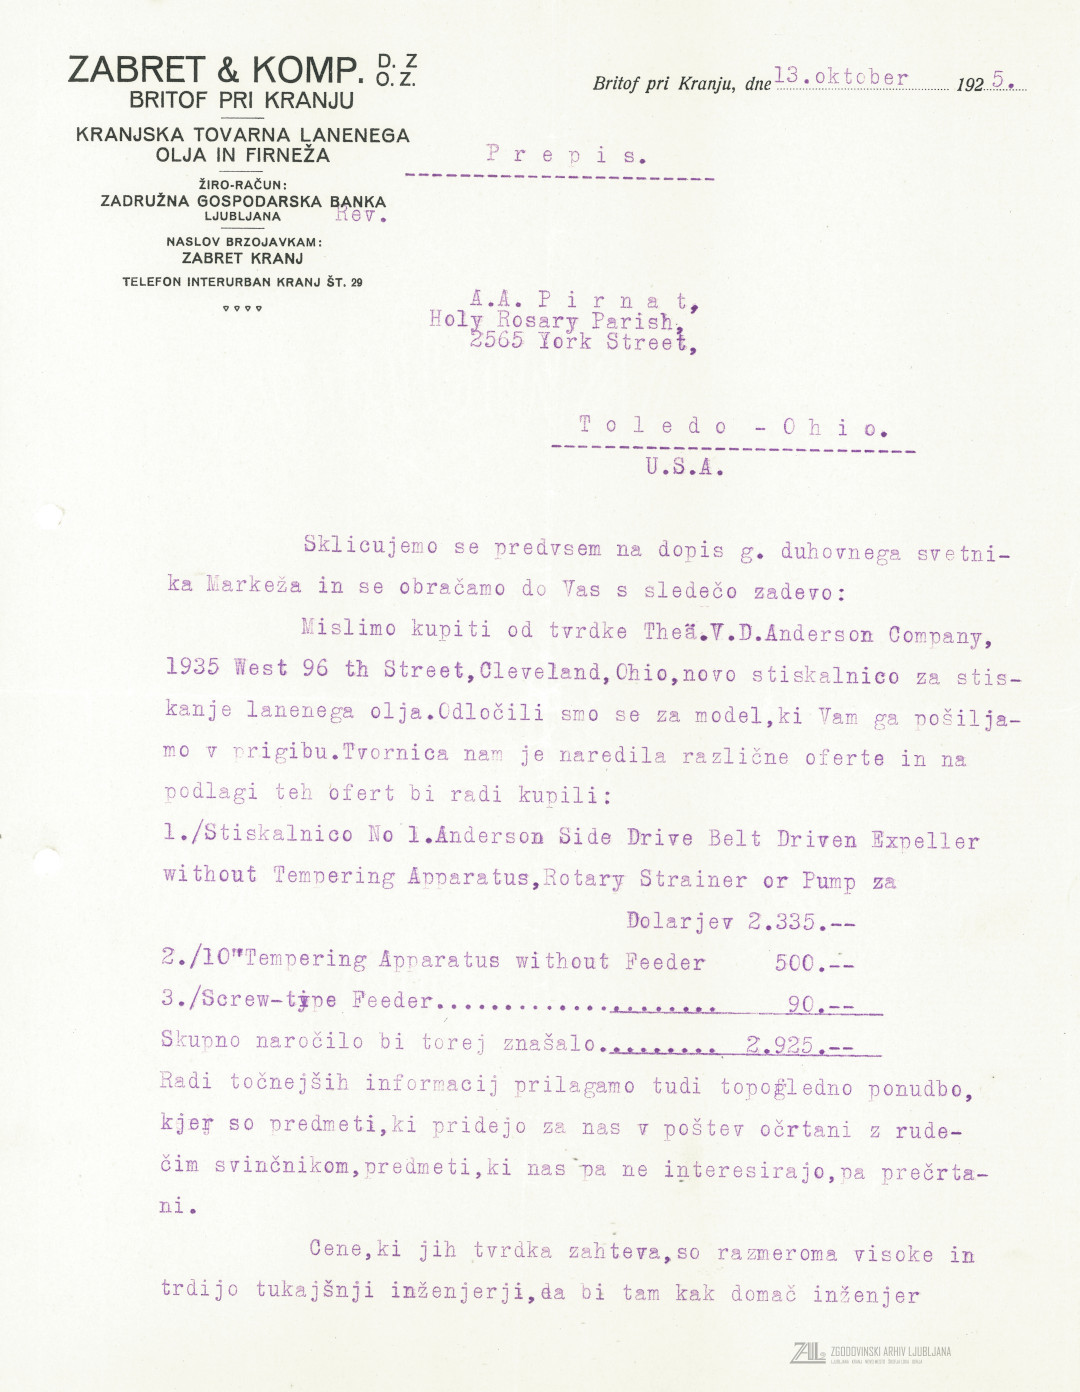 Prva stran dopisa o nabavi novih strojev, 1925. SI_ZAL_KRA/0080 Kranjska tovarna lanenega olja in firneža Zabret & Comp. Britof pri Kranju, t. e. 1, p. e. 8.